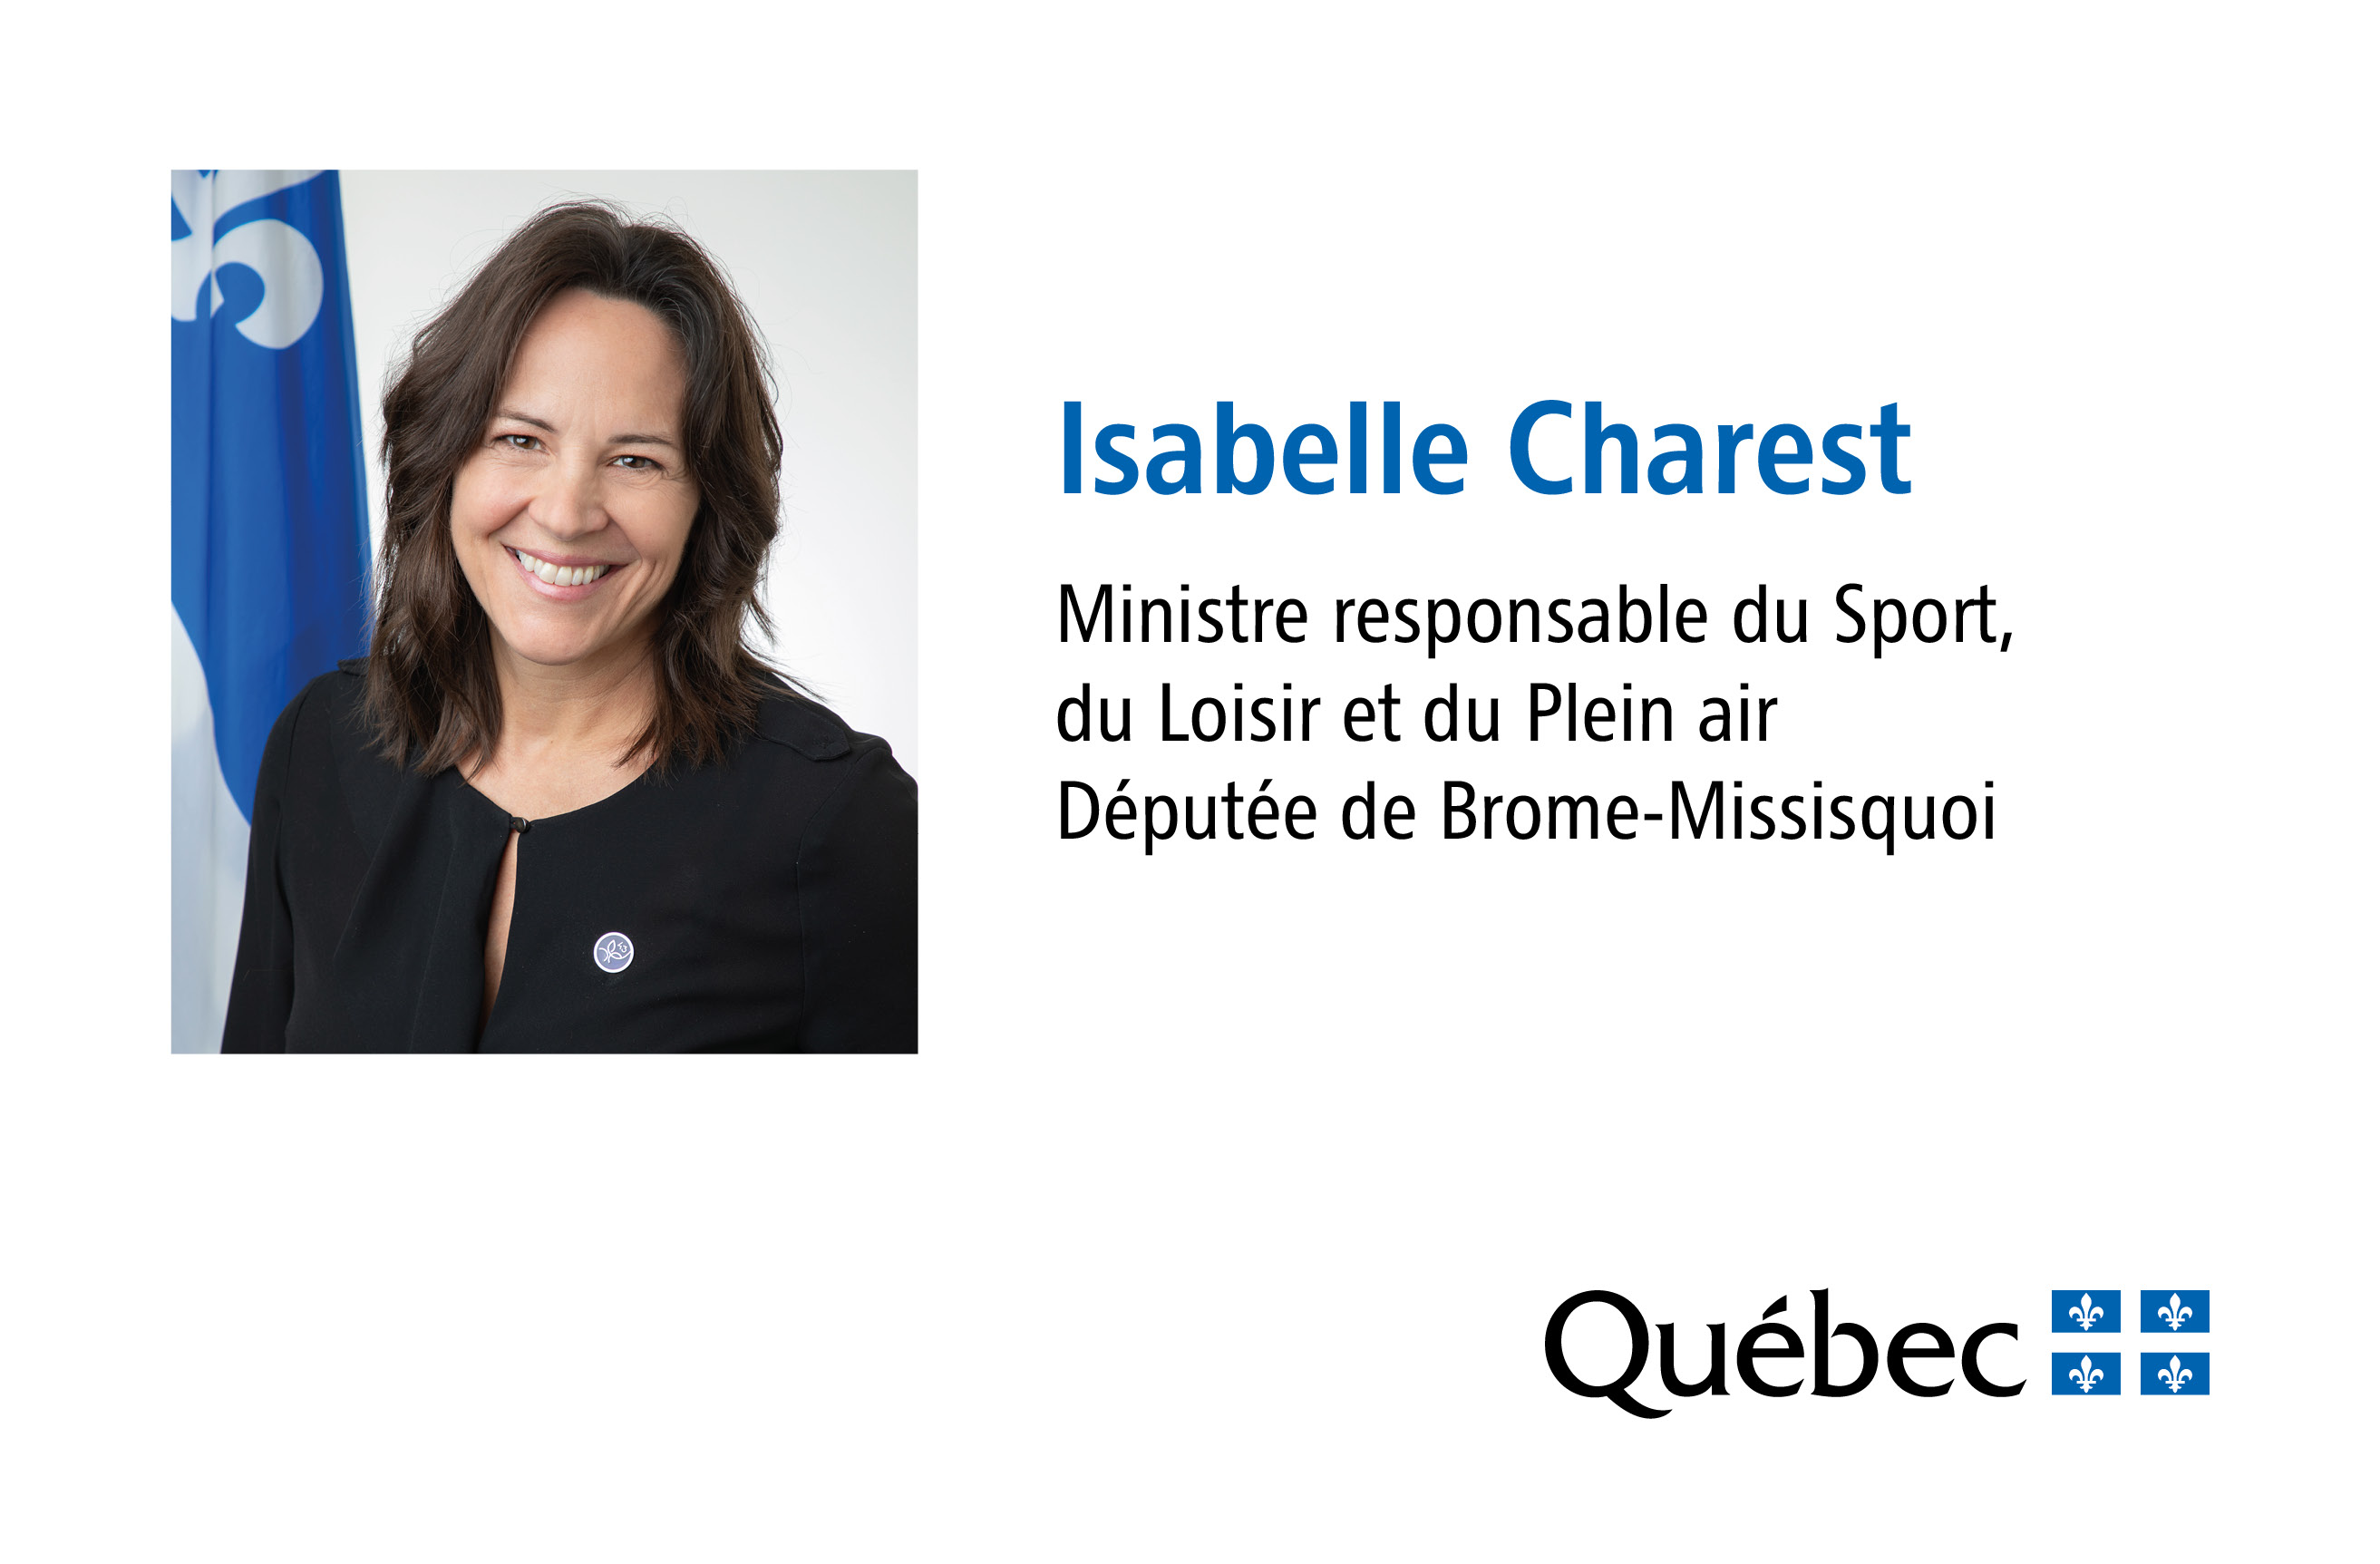 Isabelle Charest, Ministre responsable du Sport, du Loisir et du Plein air du Québec